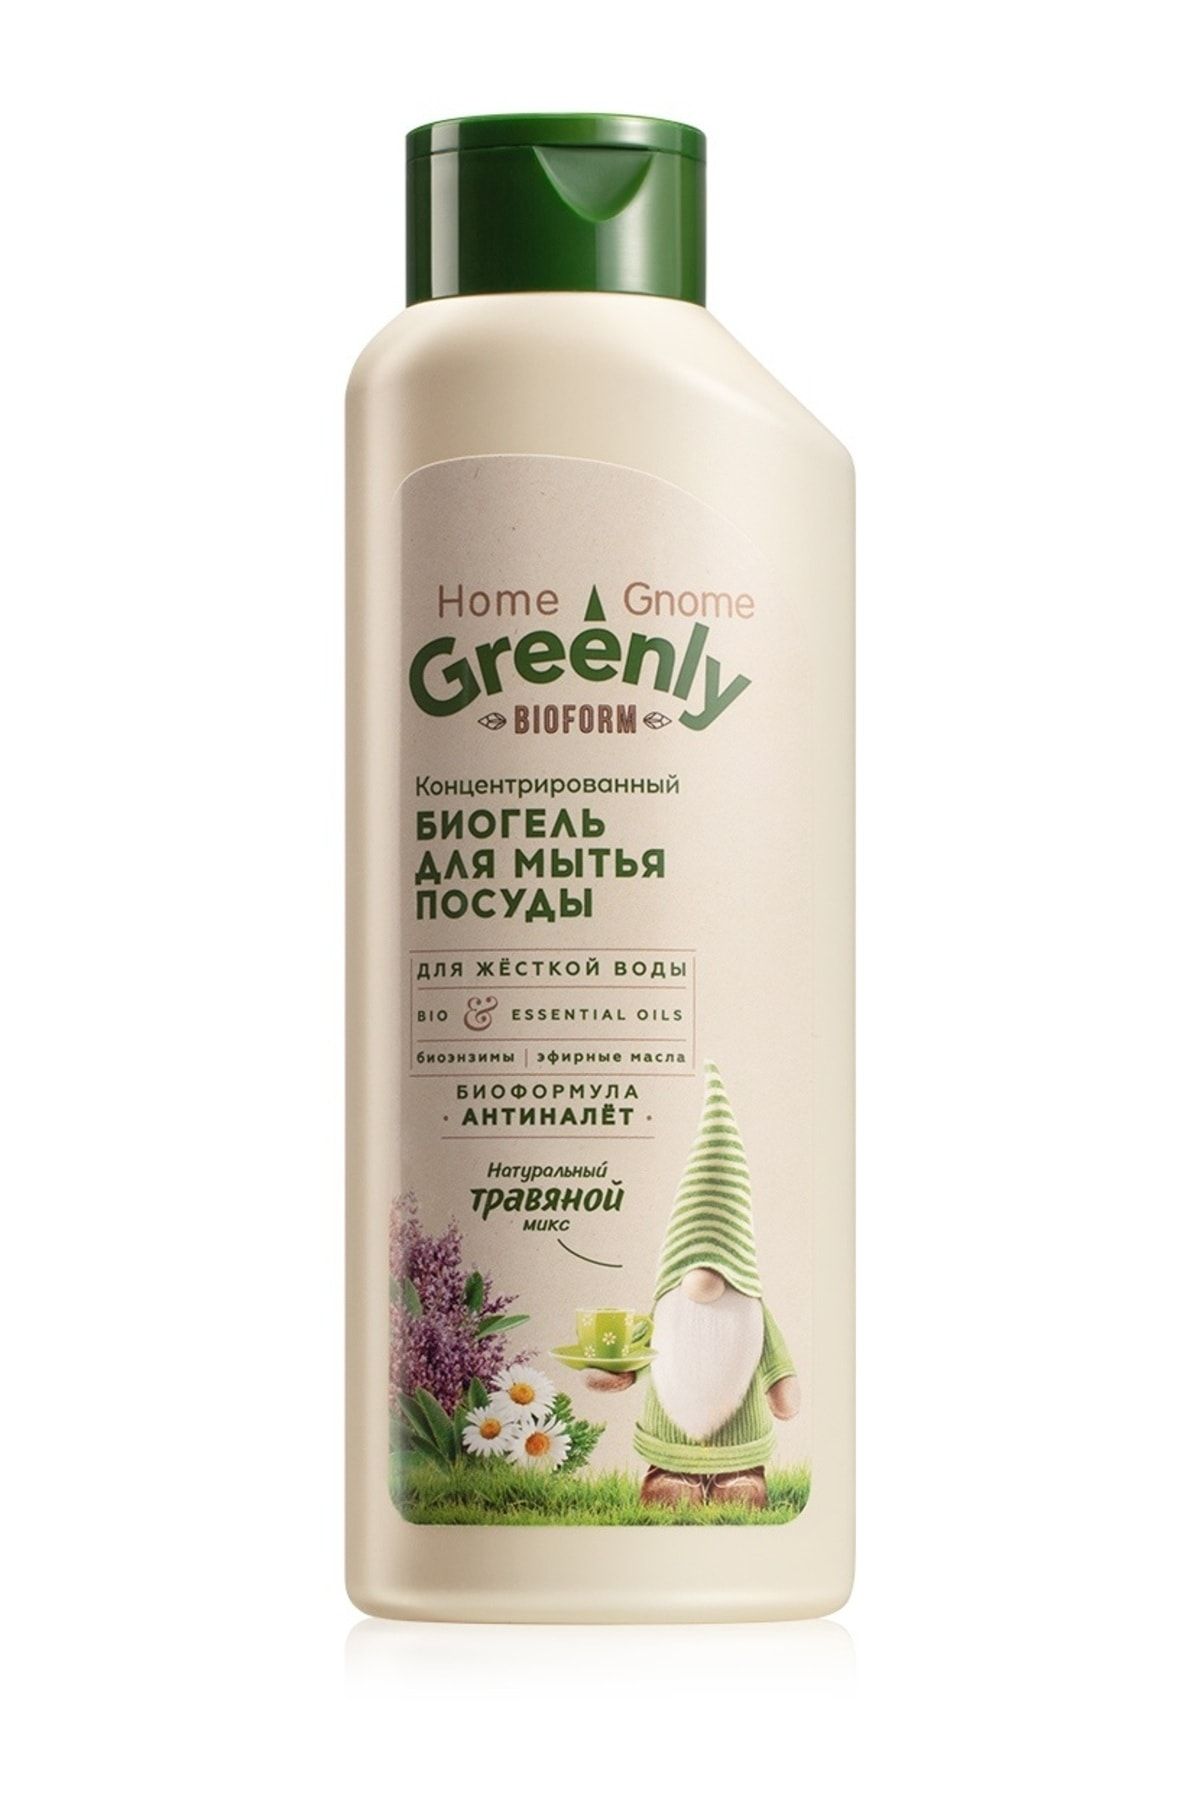 Faberlic Home Gnome Greenly Serisi Konsantre Bio Bulaşık Jeli "Bitkilerin Karışımı"500,0 ml